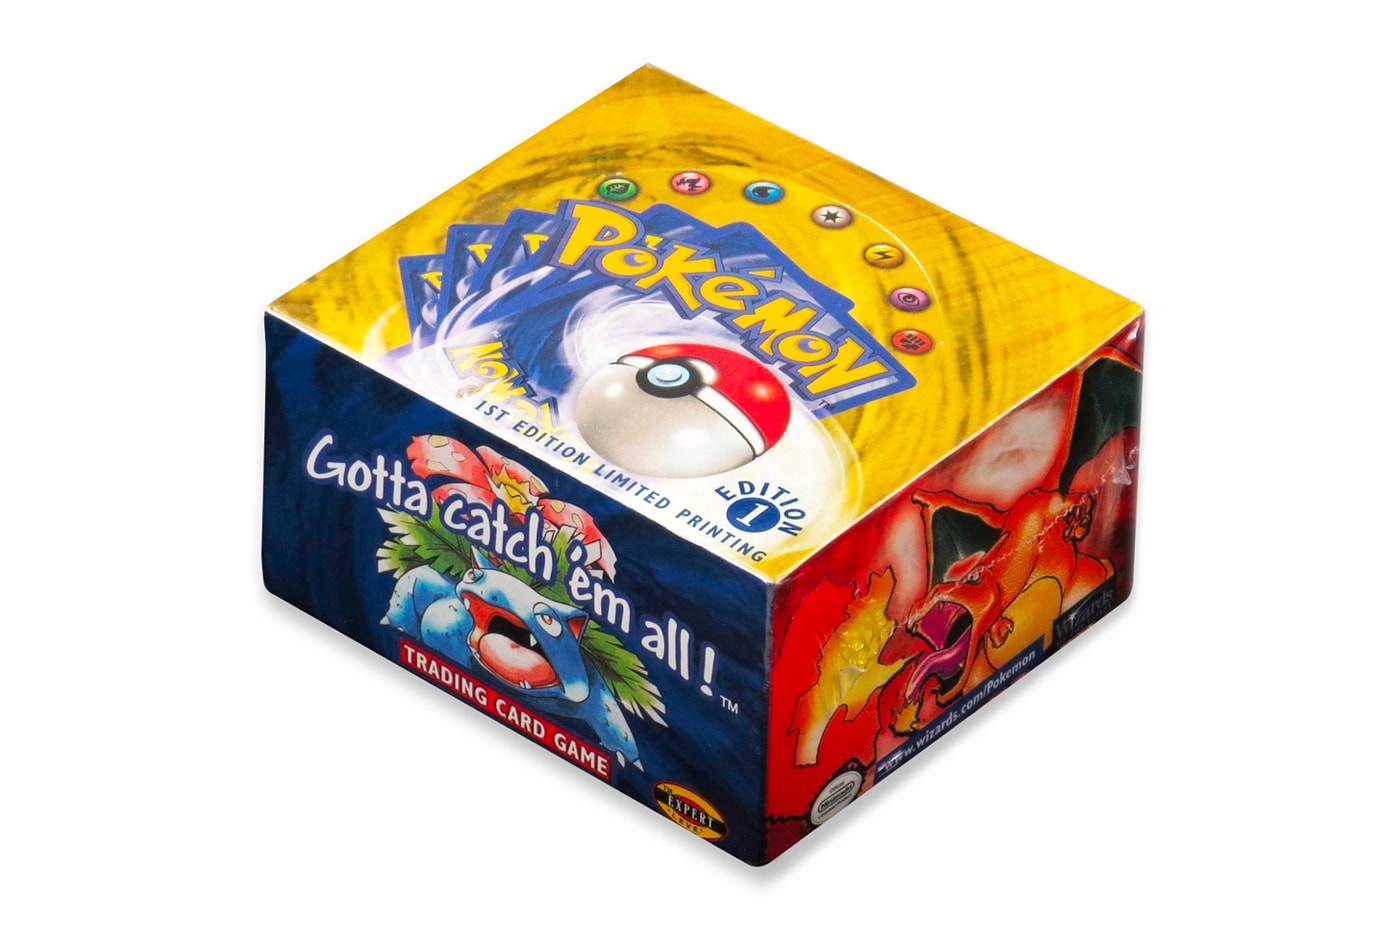 史上最高値で落札される可能性のある『ポケモンカード』『Pokémon Trading Card』がオークションに登場 Pre Auction Rare Pokemon Box Set 300000 USD dollars charizard gotta catch em all booster pack gem mint condition heritage auctions